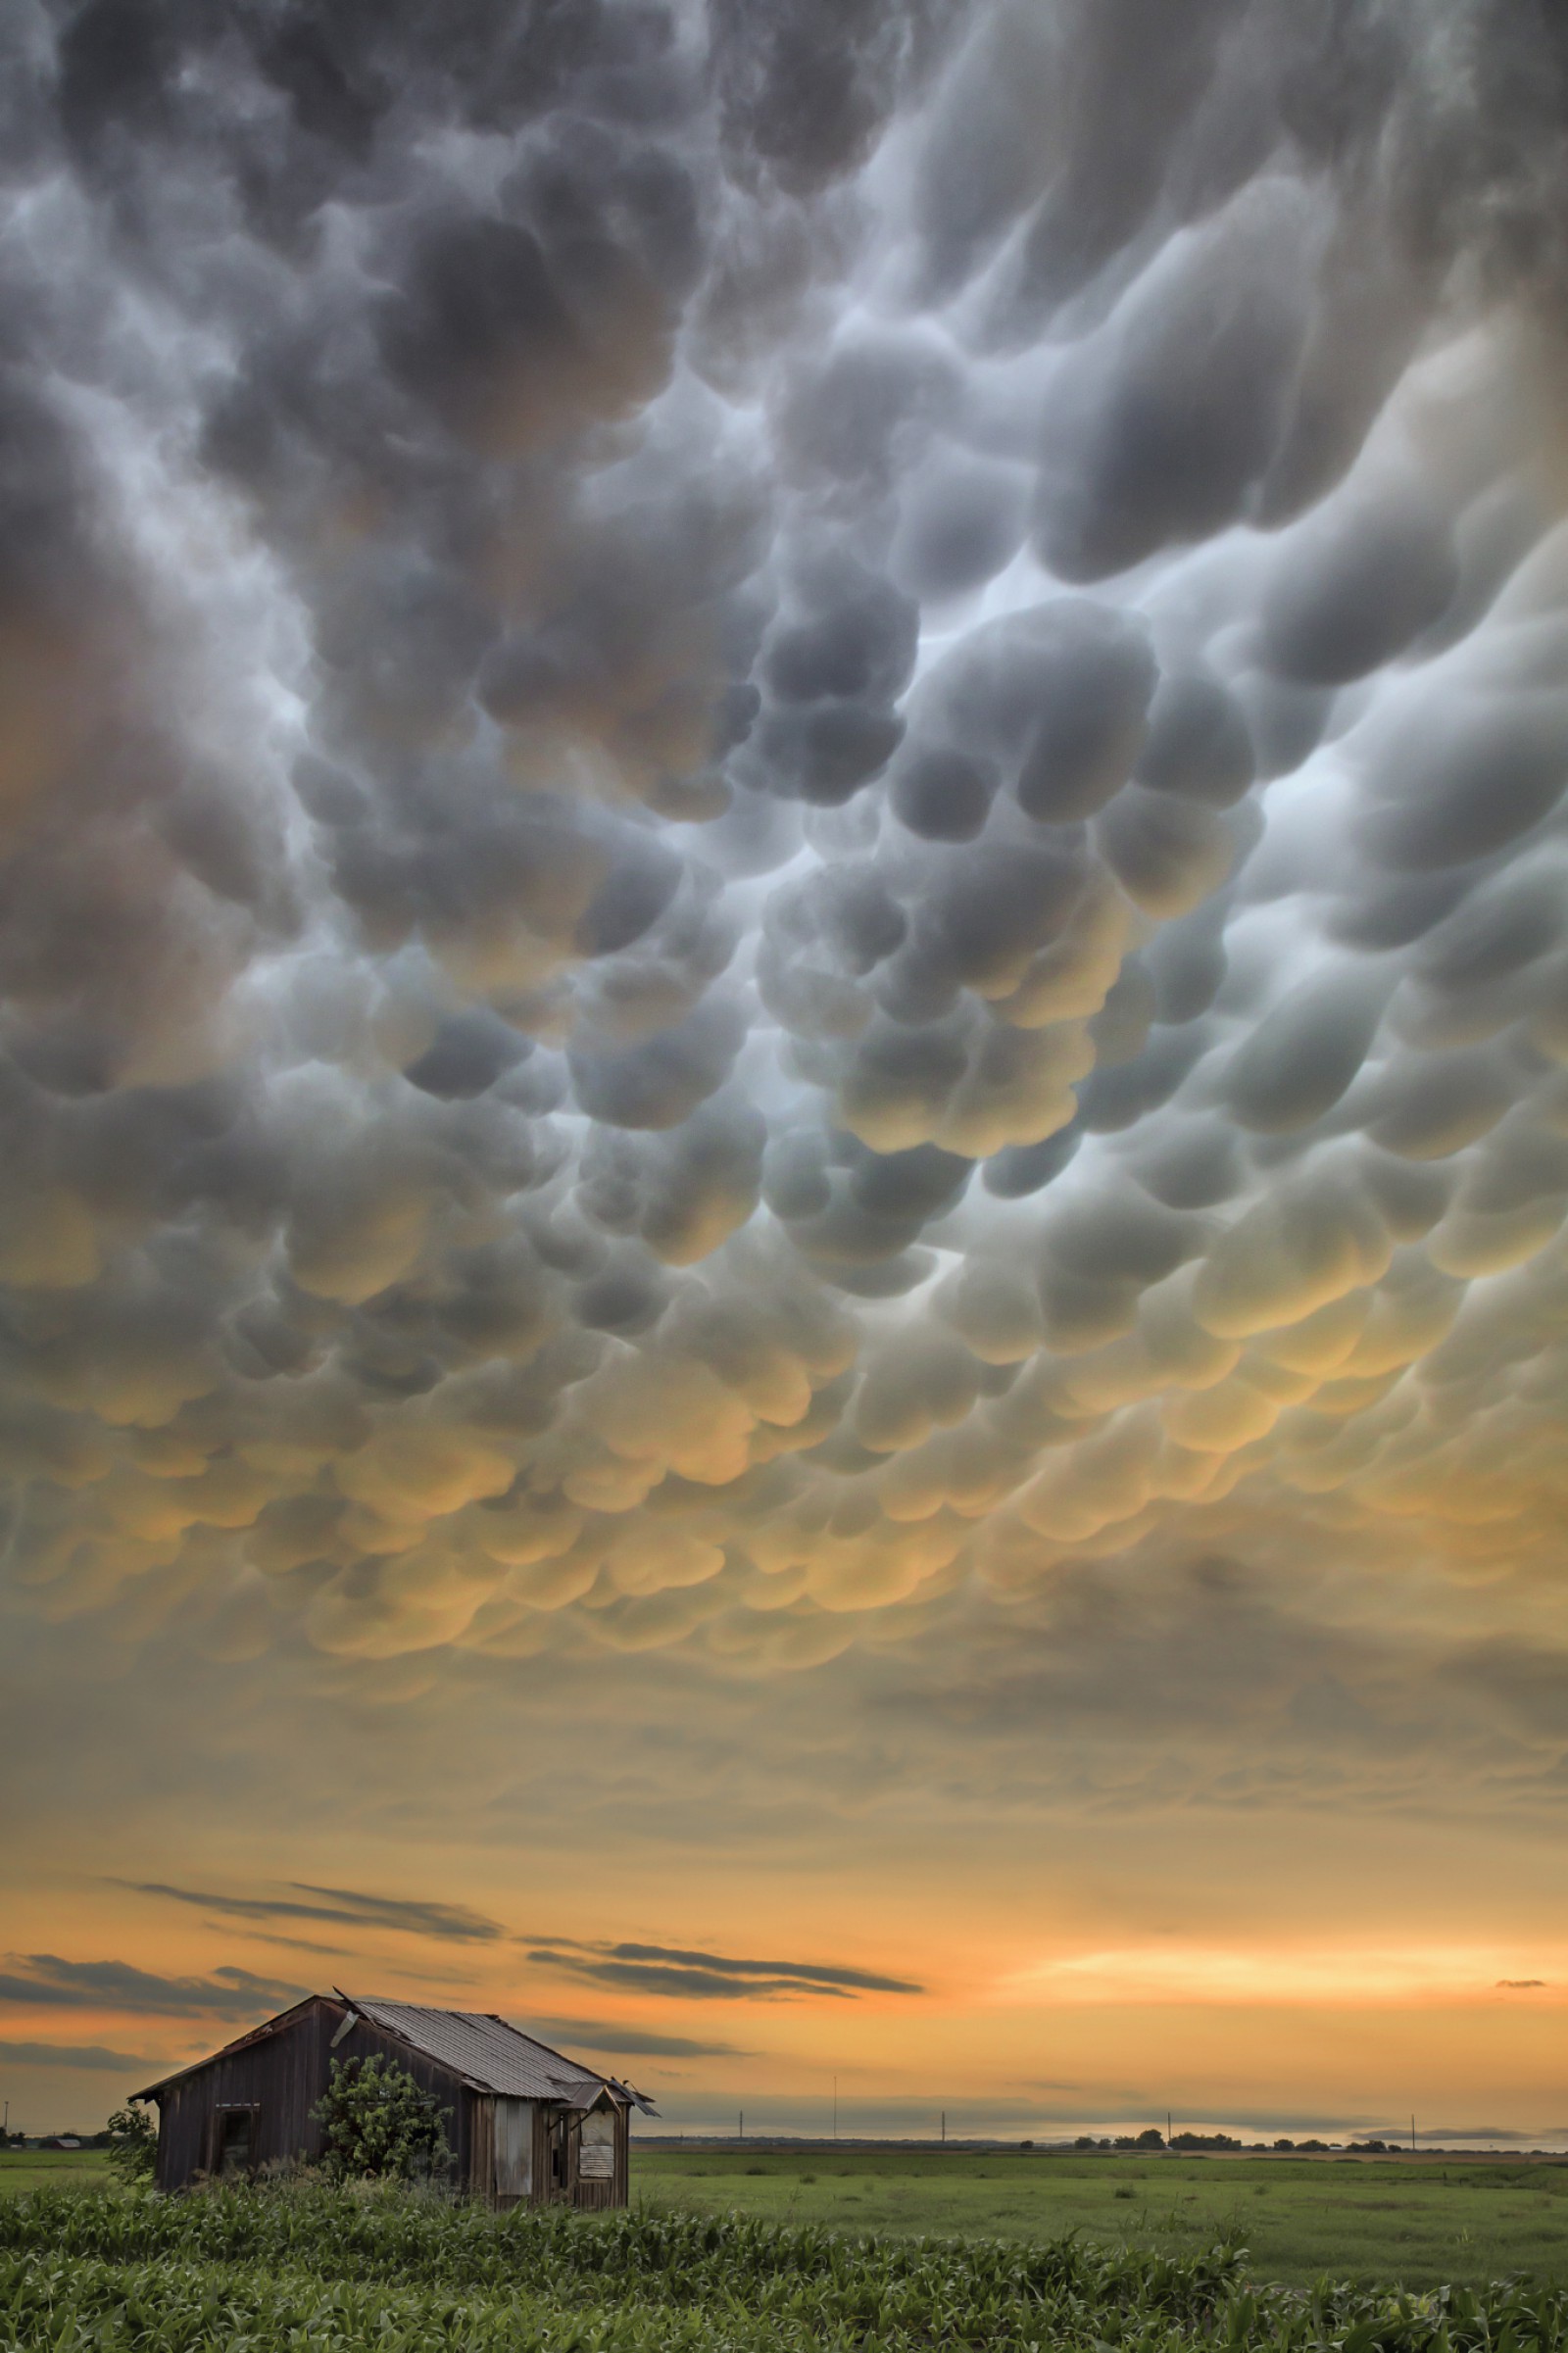 20 Εκπληκτικές φωτογραφίες από τον μεγαλύτερο κυνηγό καταιγίδων. Εντυπωσιακές. - Εικόνα 8